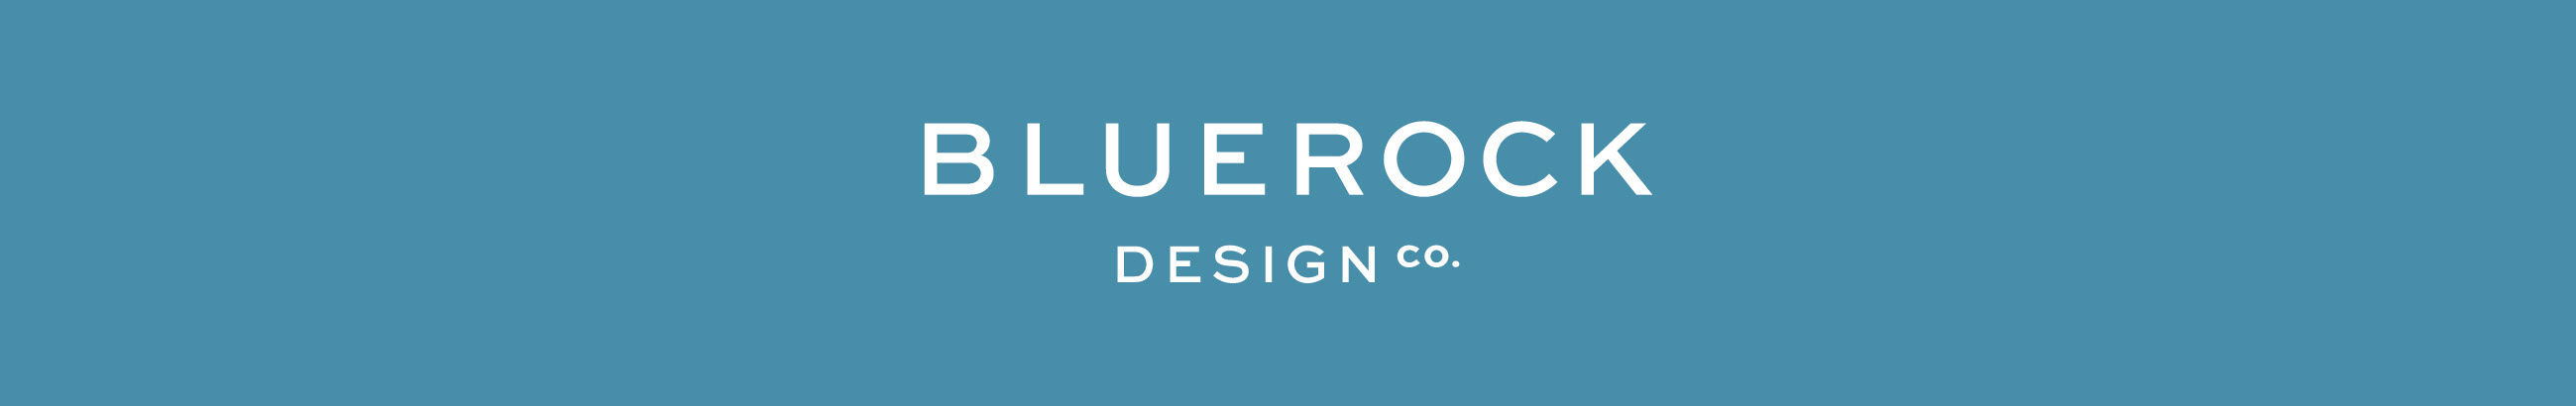 Bluerock Design Co. profil başlığı